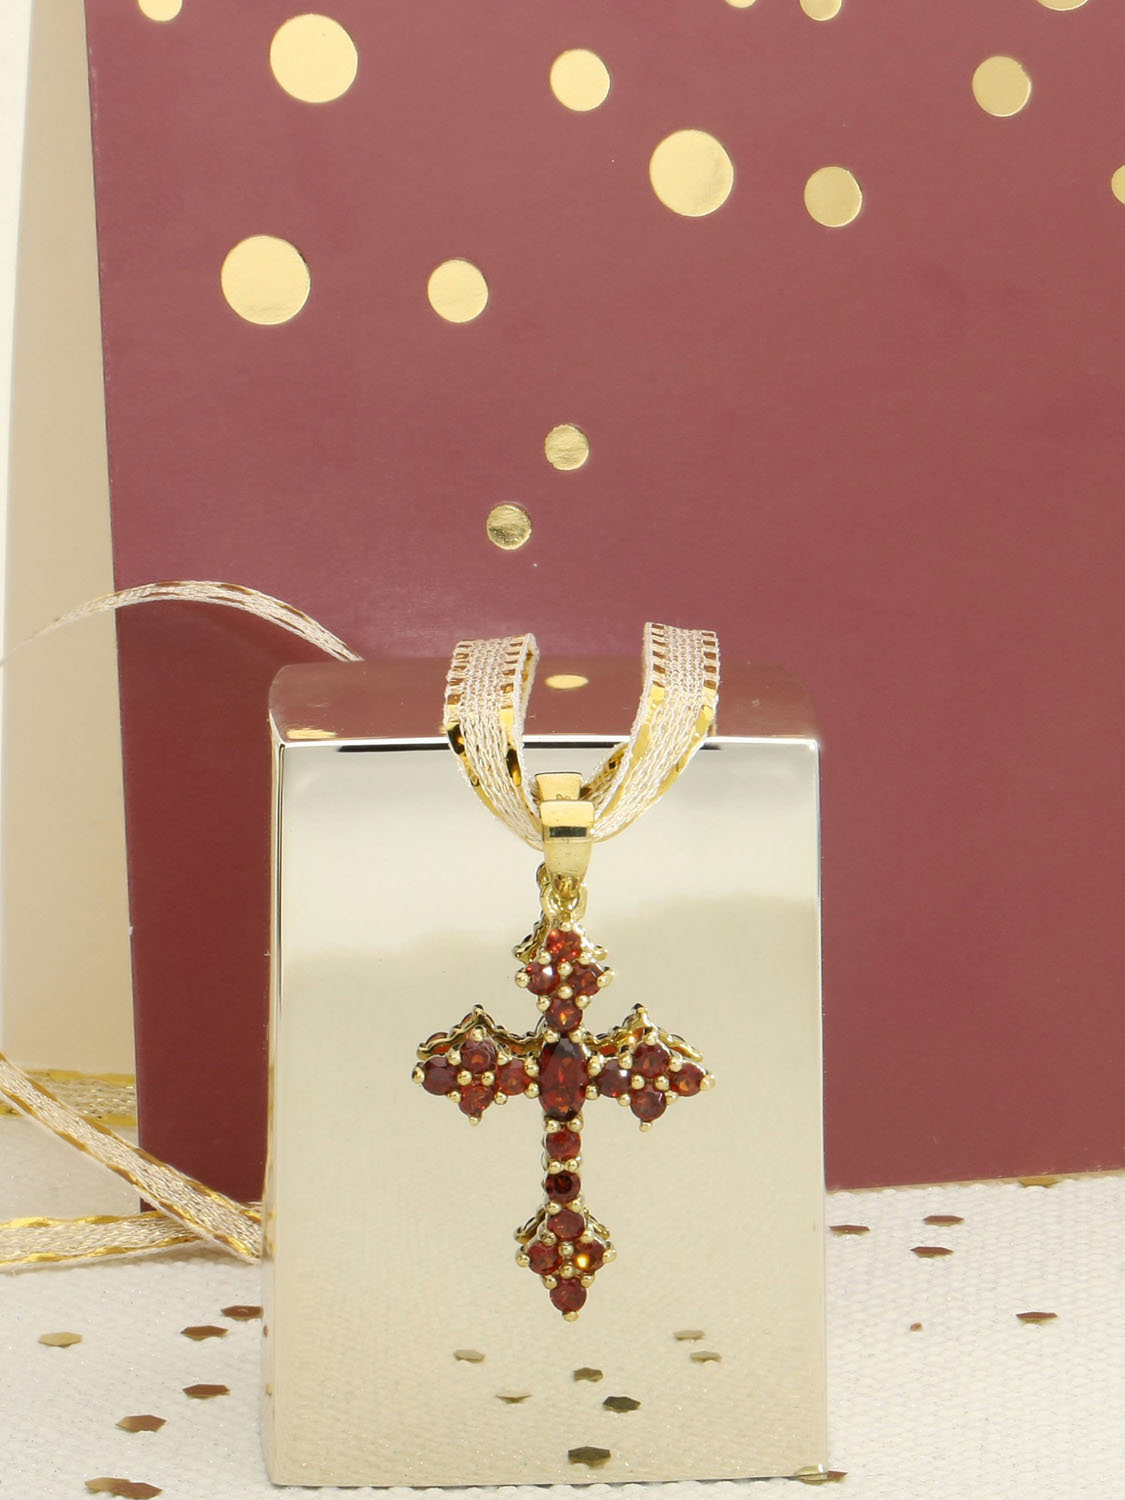 Kreuzanhänger für Damen aus echtem Gelbgold mit Granat Edelsteinen mit Dekoartikeln - Glorian | Stilleben